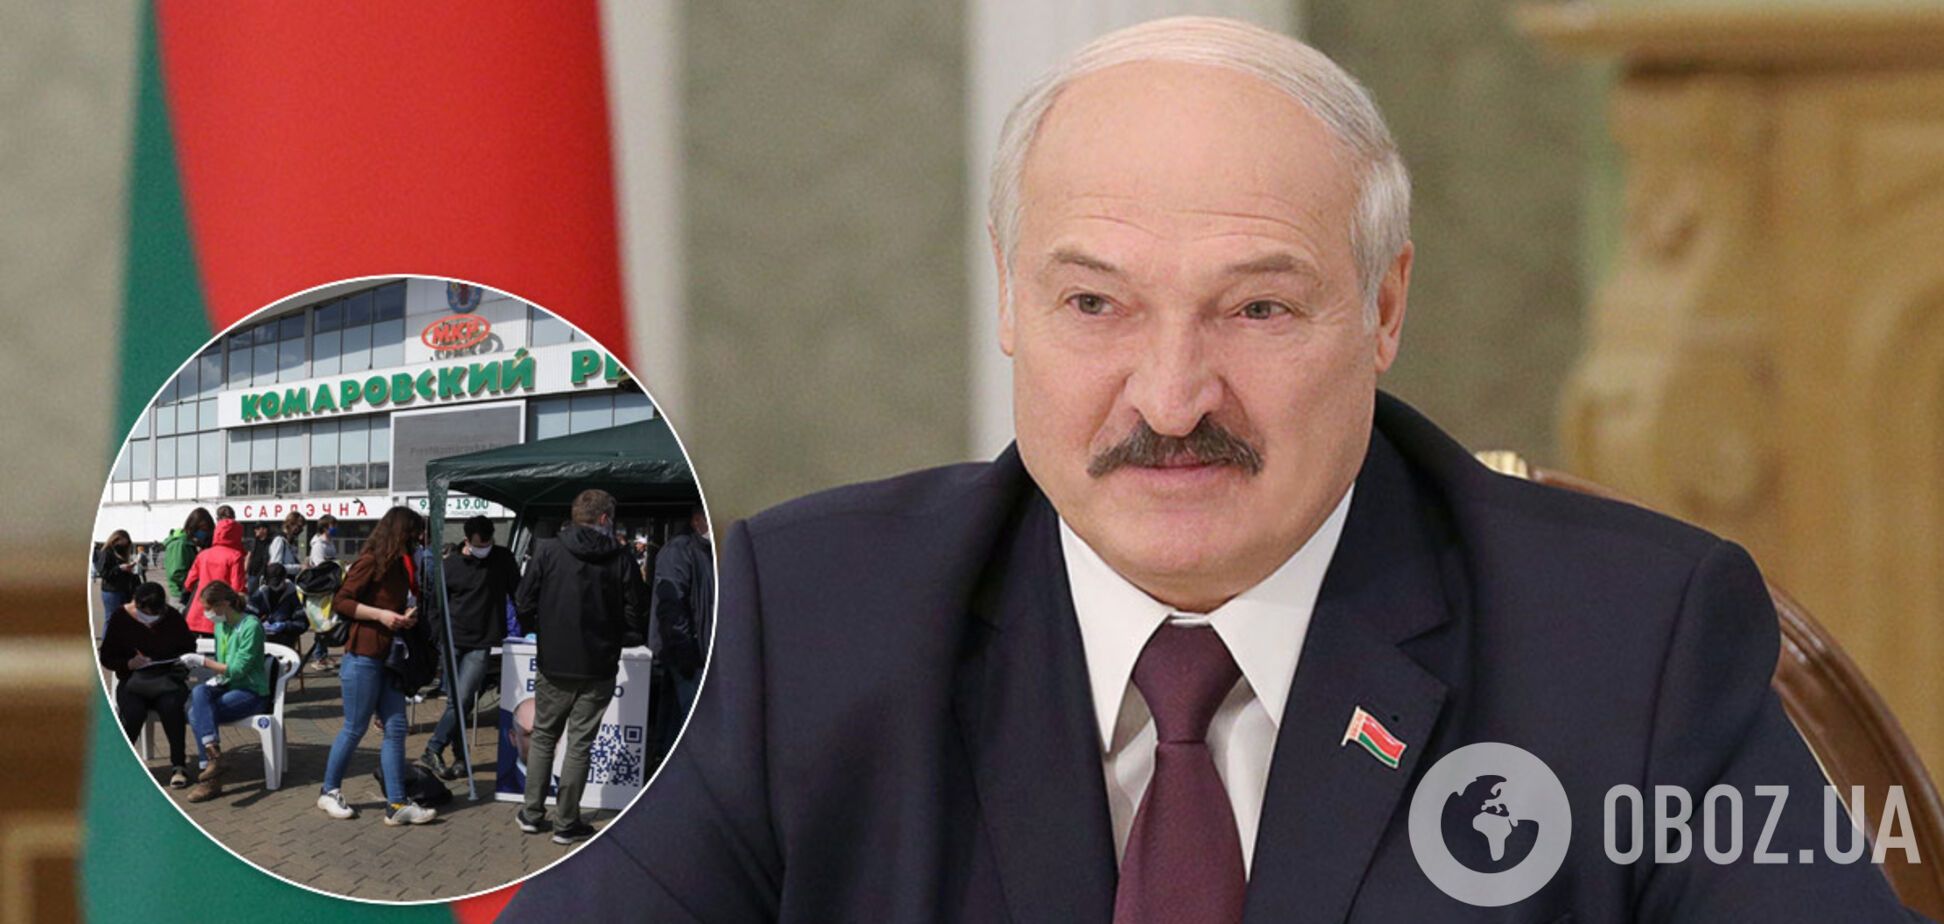 Лукашенко обвинил оппозицию в 'каруселях' при сборе подписей